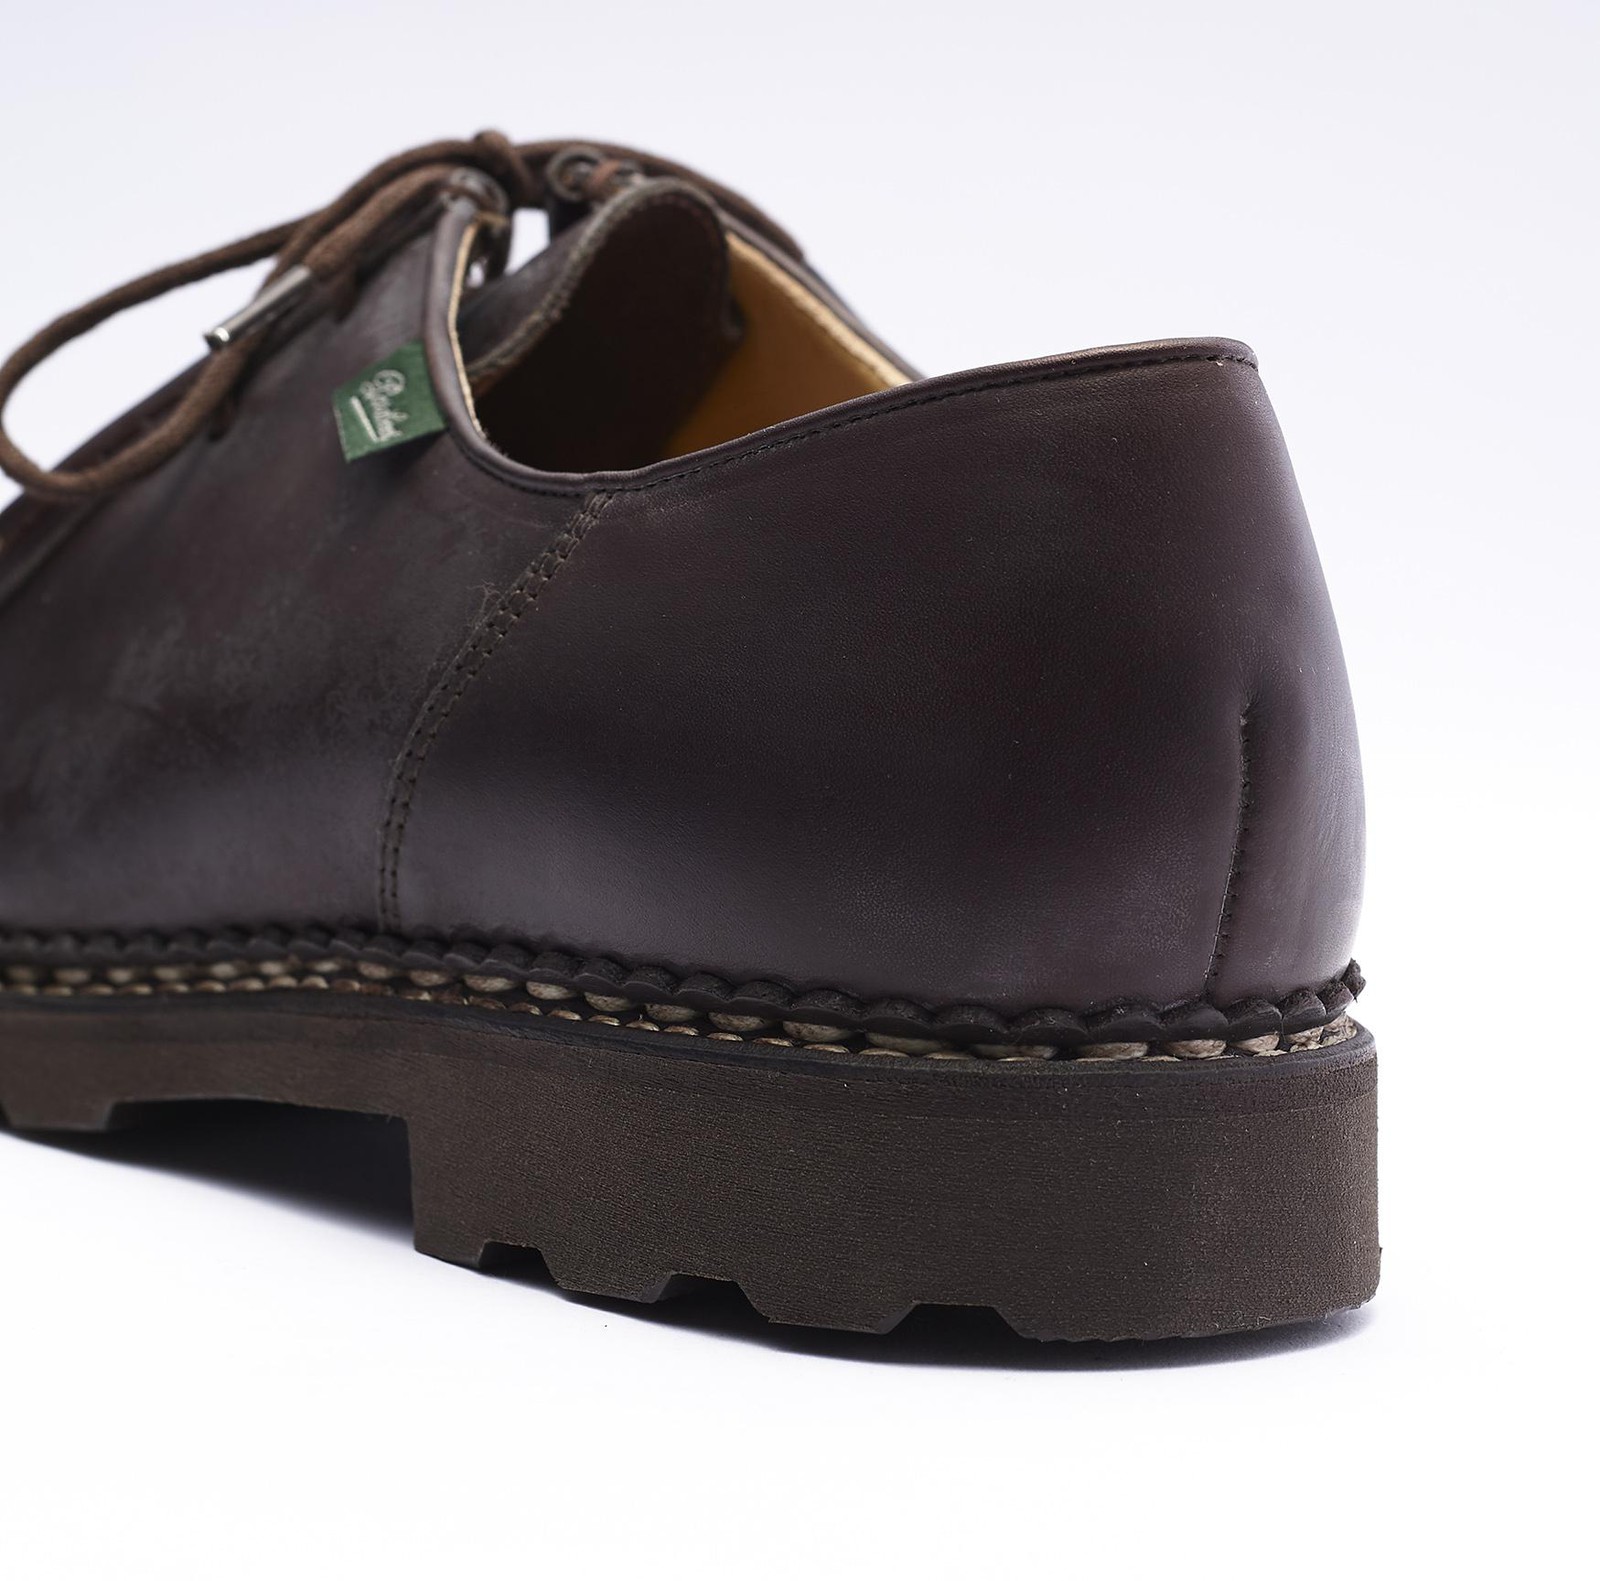 パラブーツはラバーソールを自社で開発できる唯一の革靴メーカーとして有名。ミカエルは内部のハニカム構造で衝撃を吸収する「マルシェⅡソール」を採用。こちらも踵部の厚みは約３㎝。